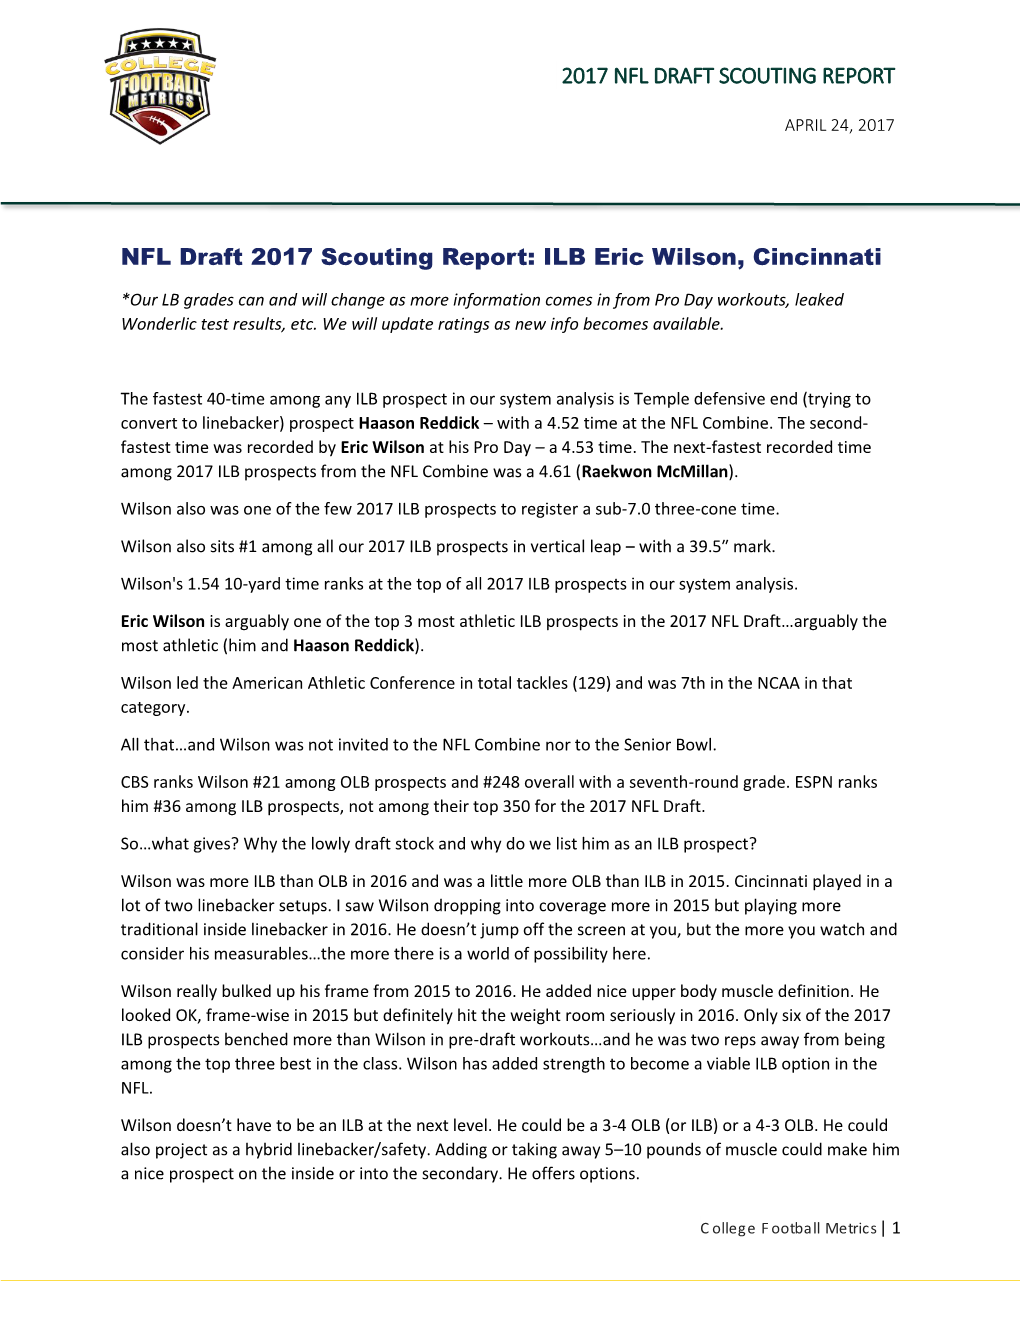 2017 NFL DRAFT SCOUTING REPORT NFL Draft 2017 Scouting Report: ILB Eric Wilson, Cincinnati